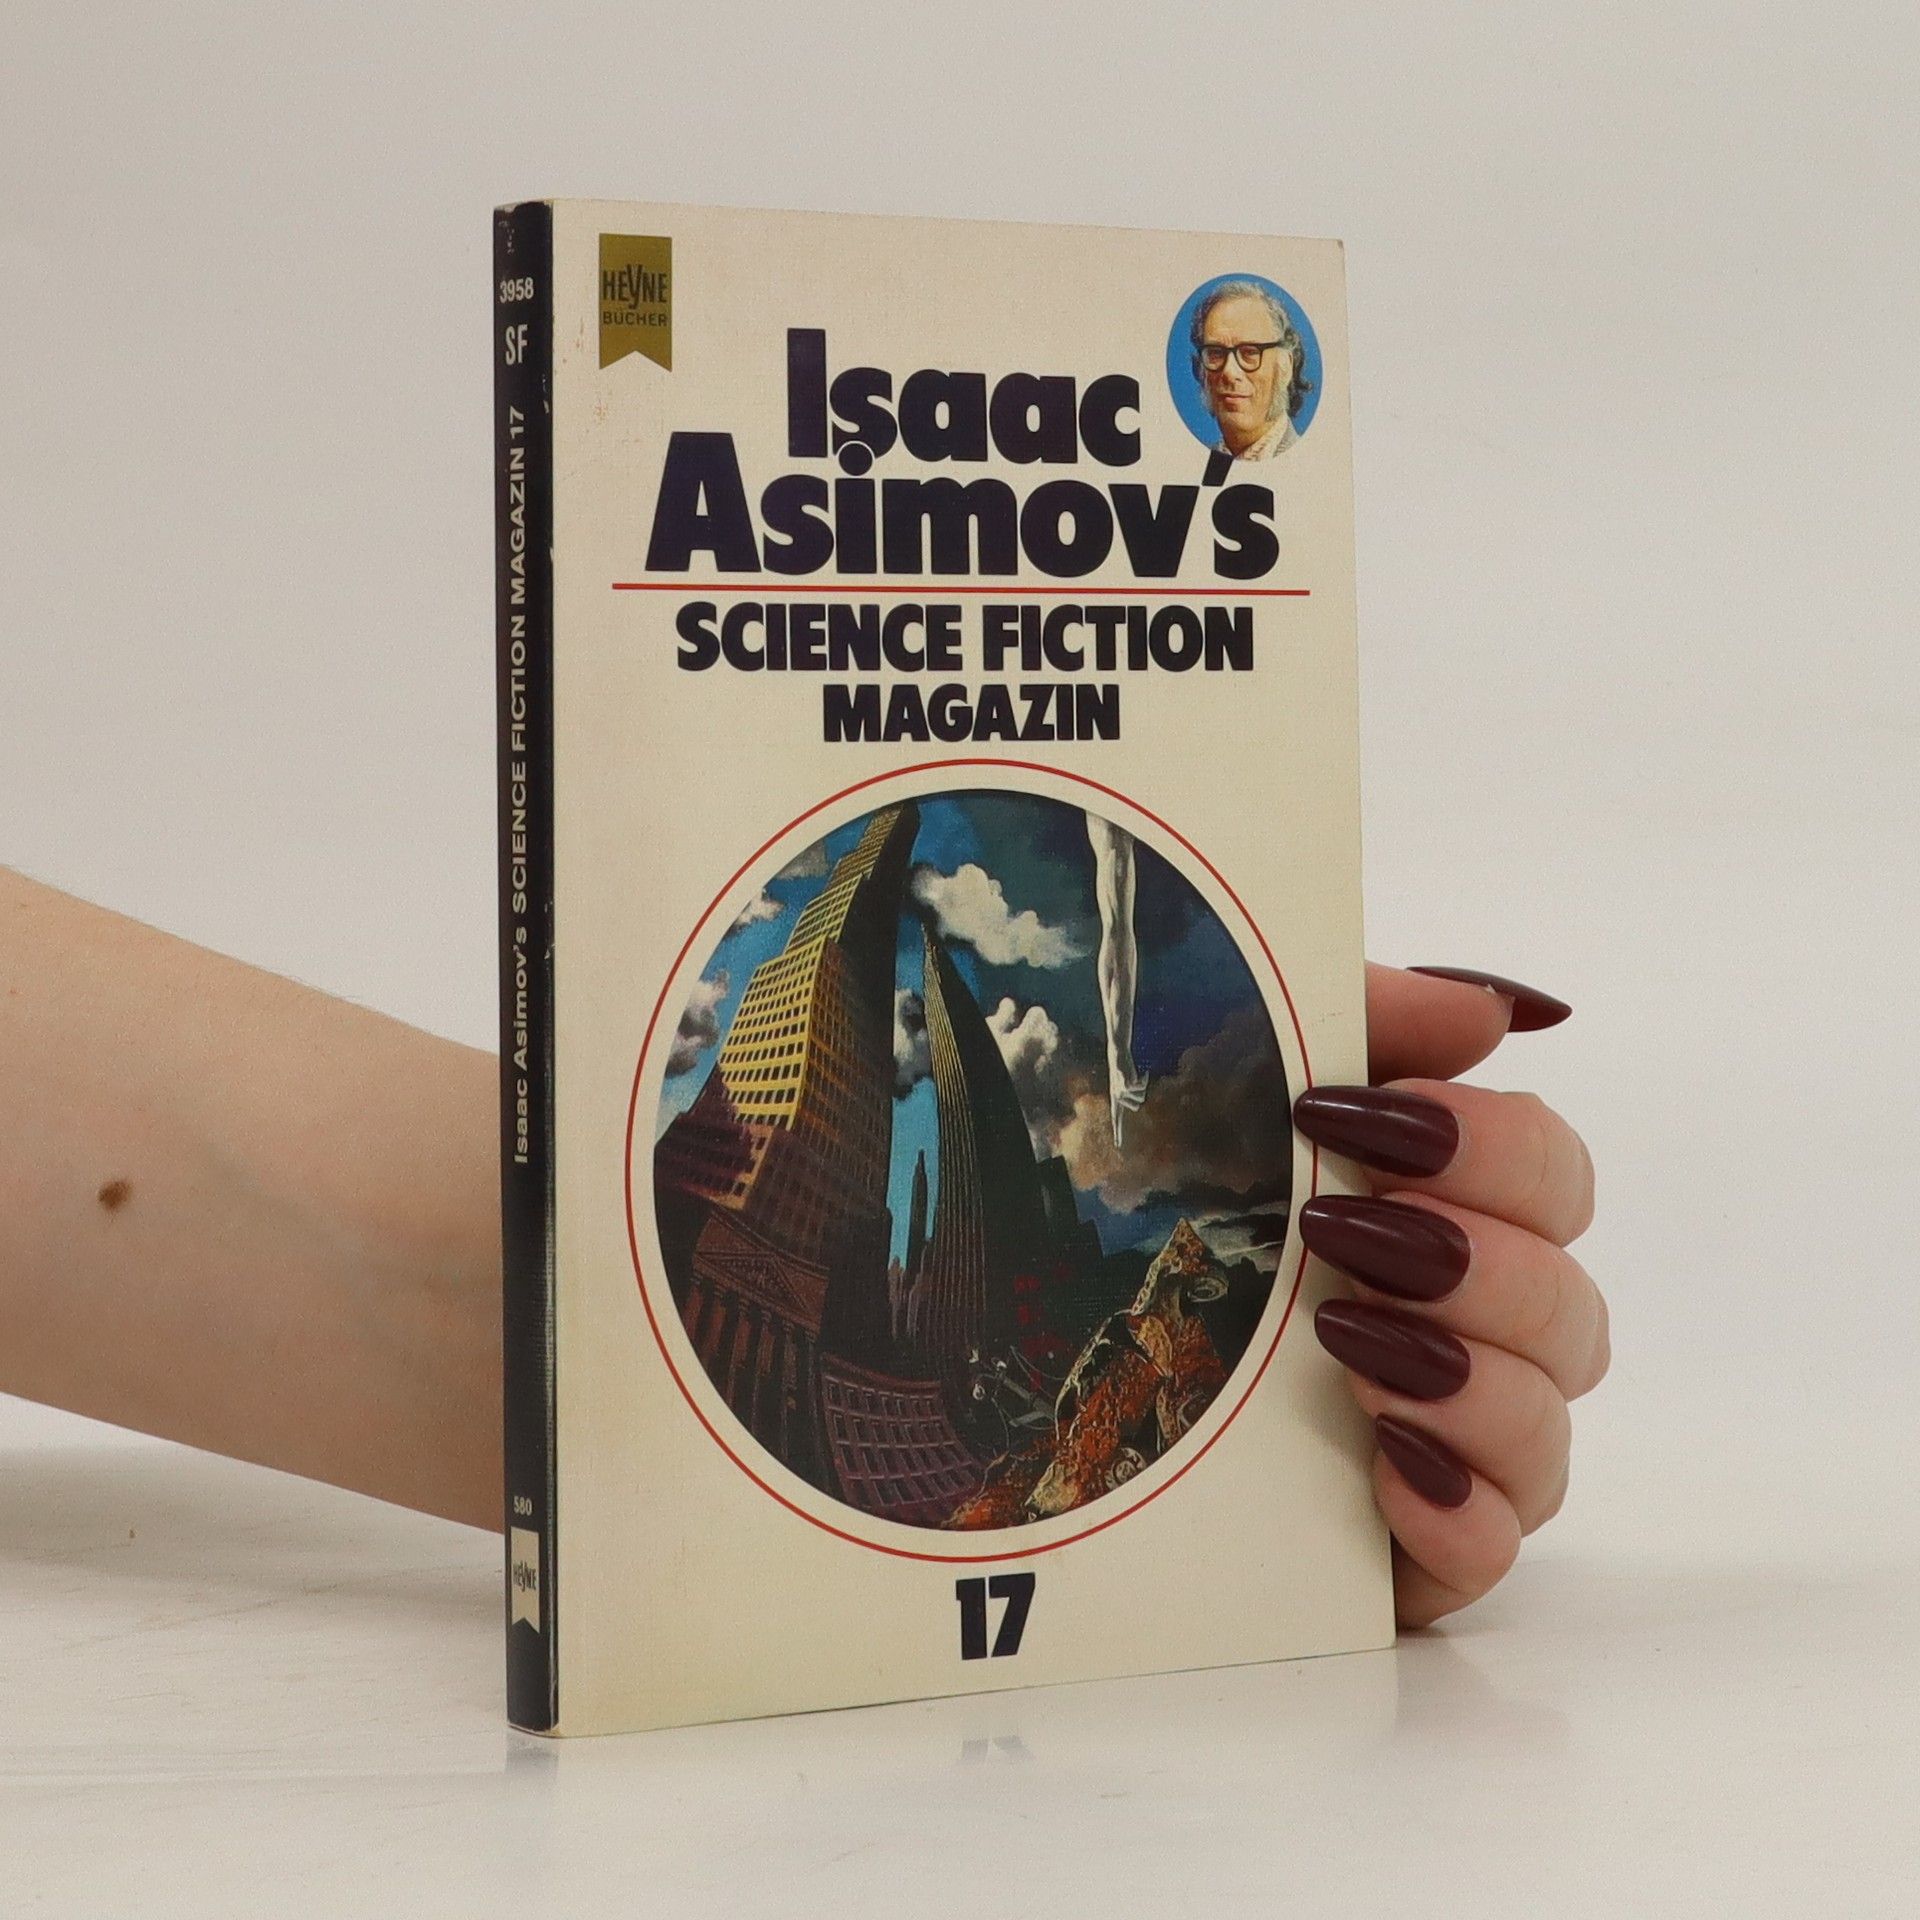 Isaac Asimovs Science Fiction Magazin 17 - Isaac Asimov